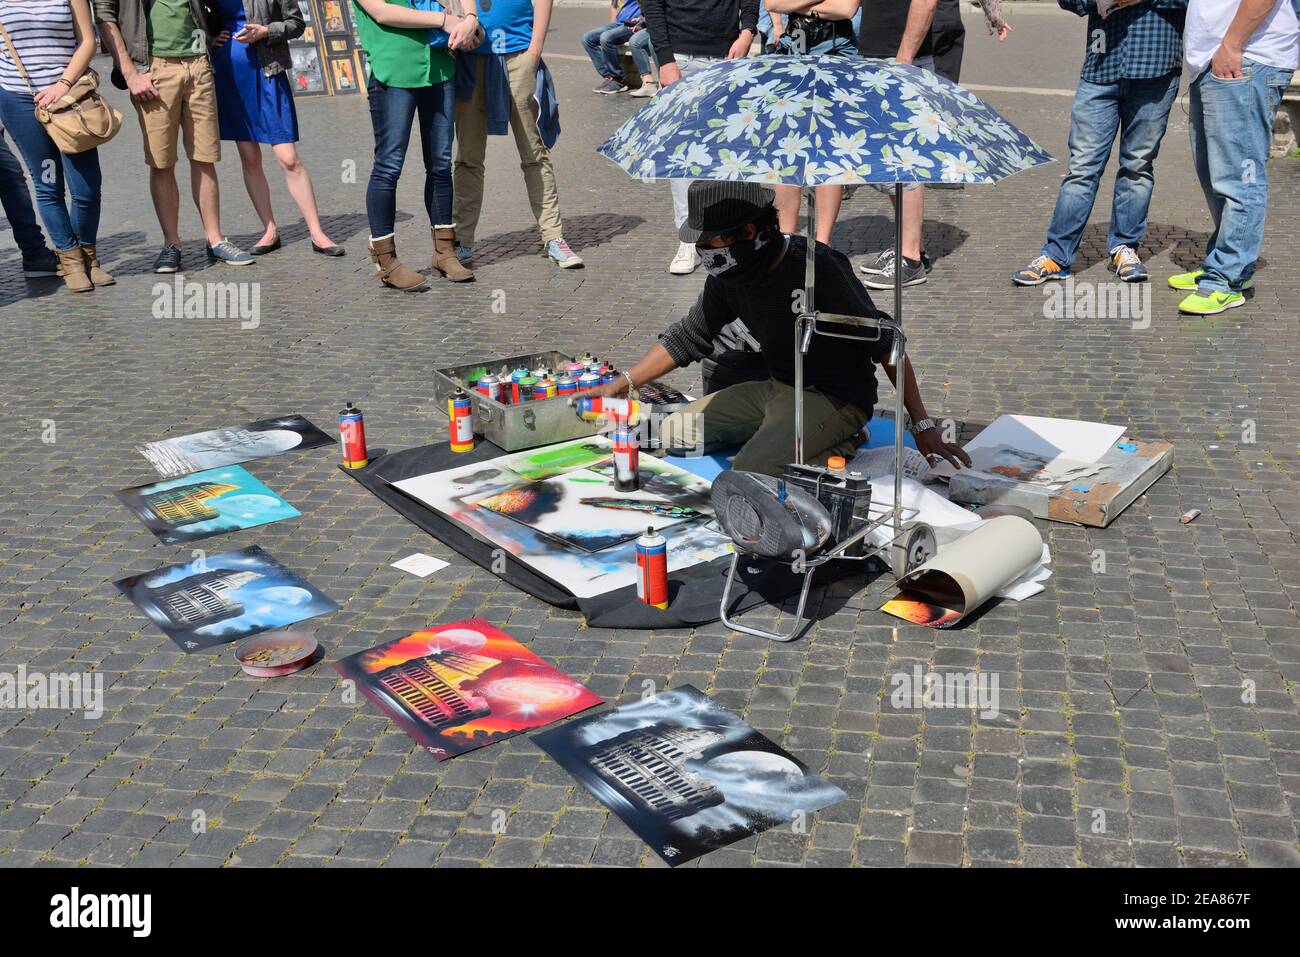 Un hombre joven bajo un paraguas pintando cuadros coloridos usando latas de aerosol de pintura en una calle adoquinada con el turista mirando en Roma, Italia Foto de stock